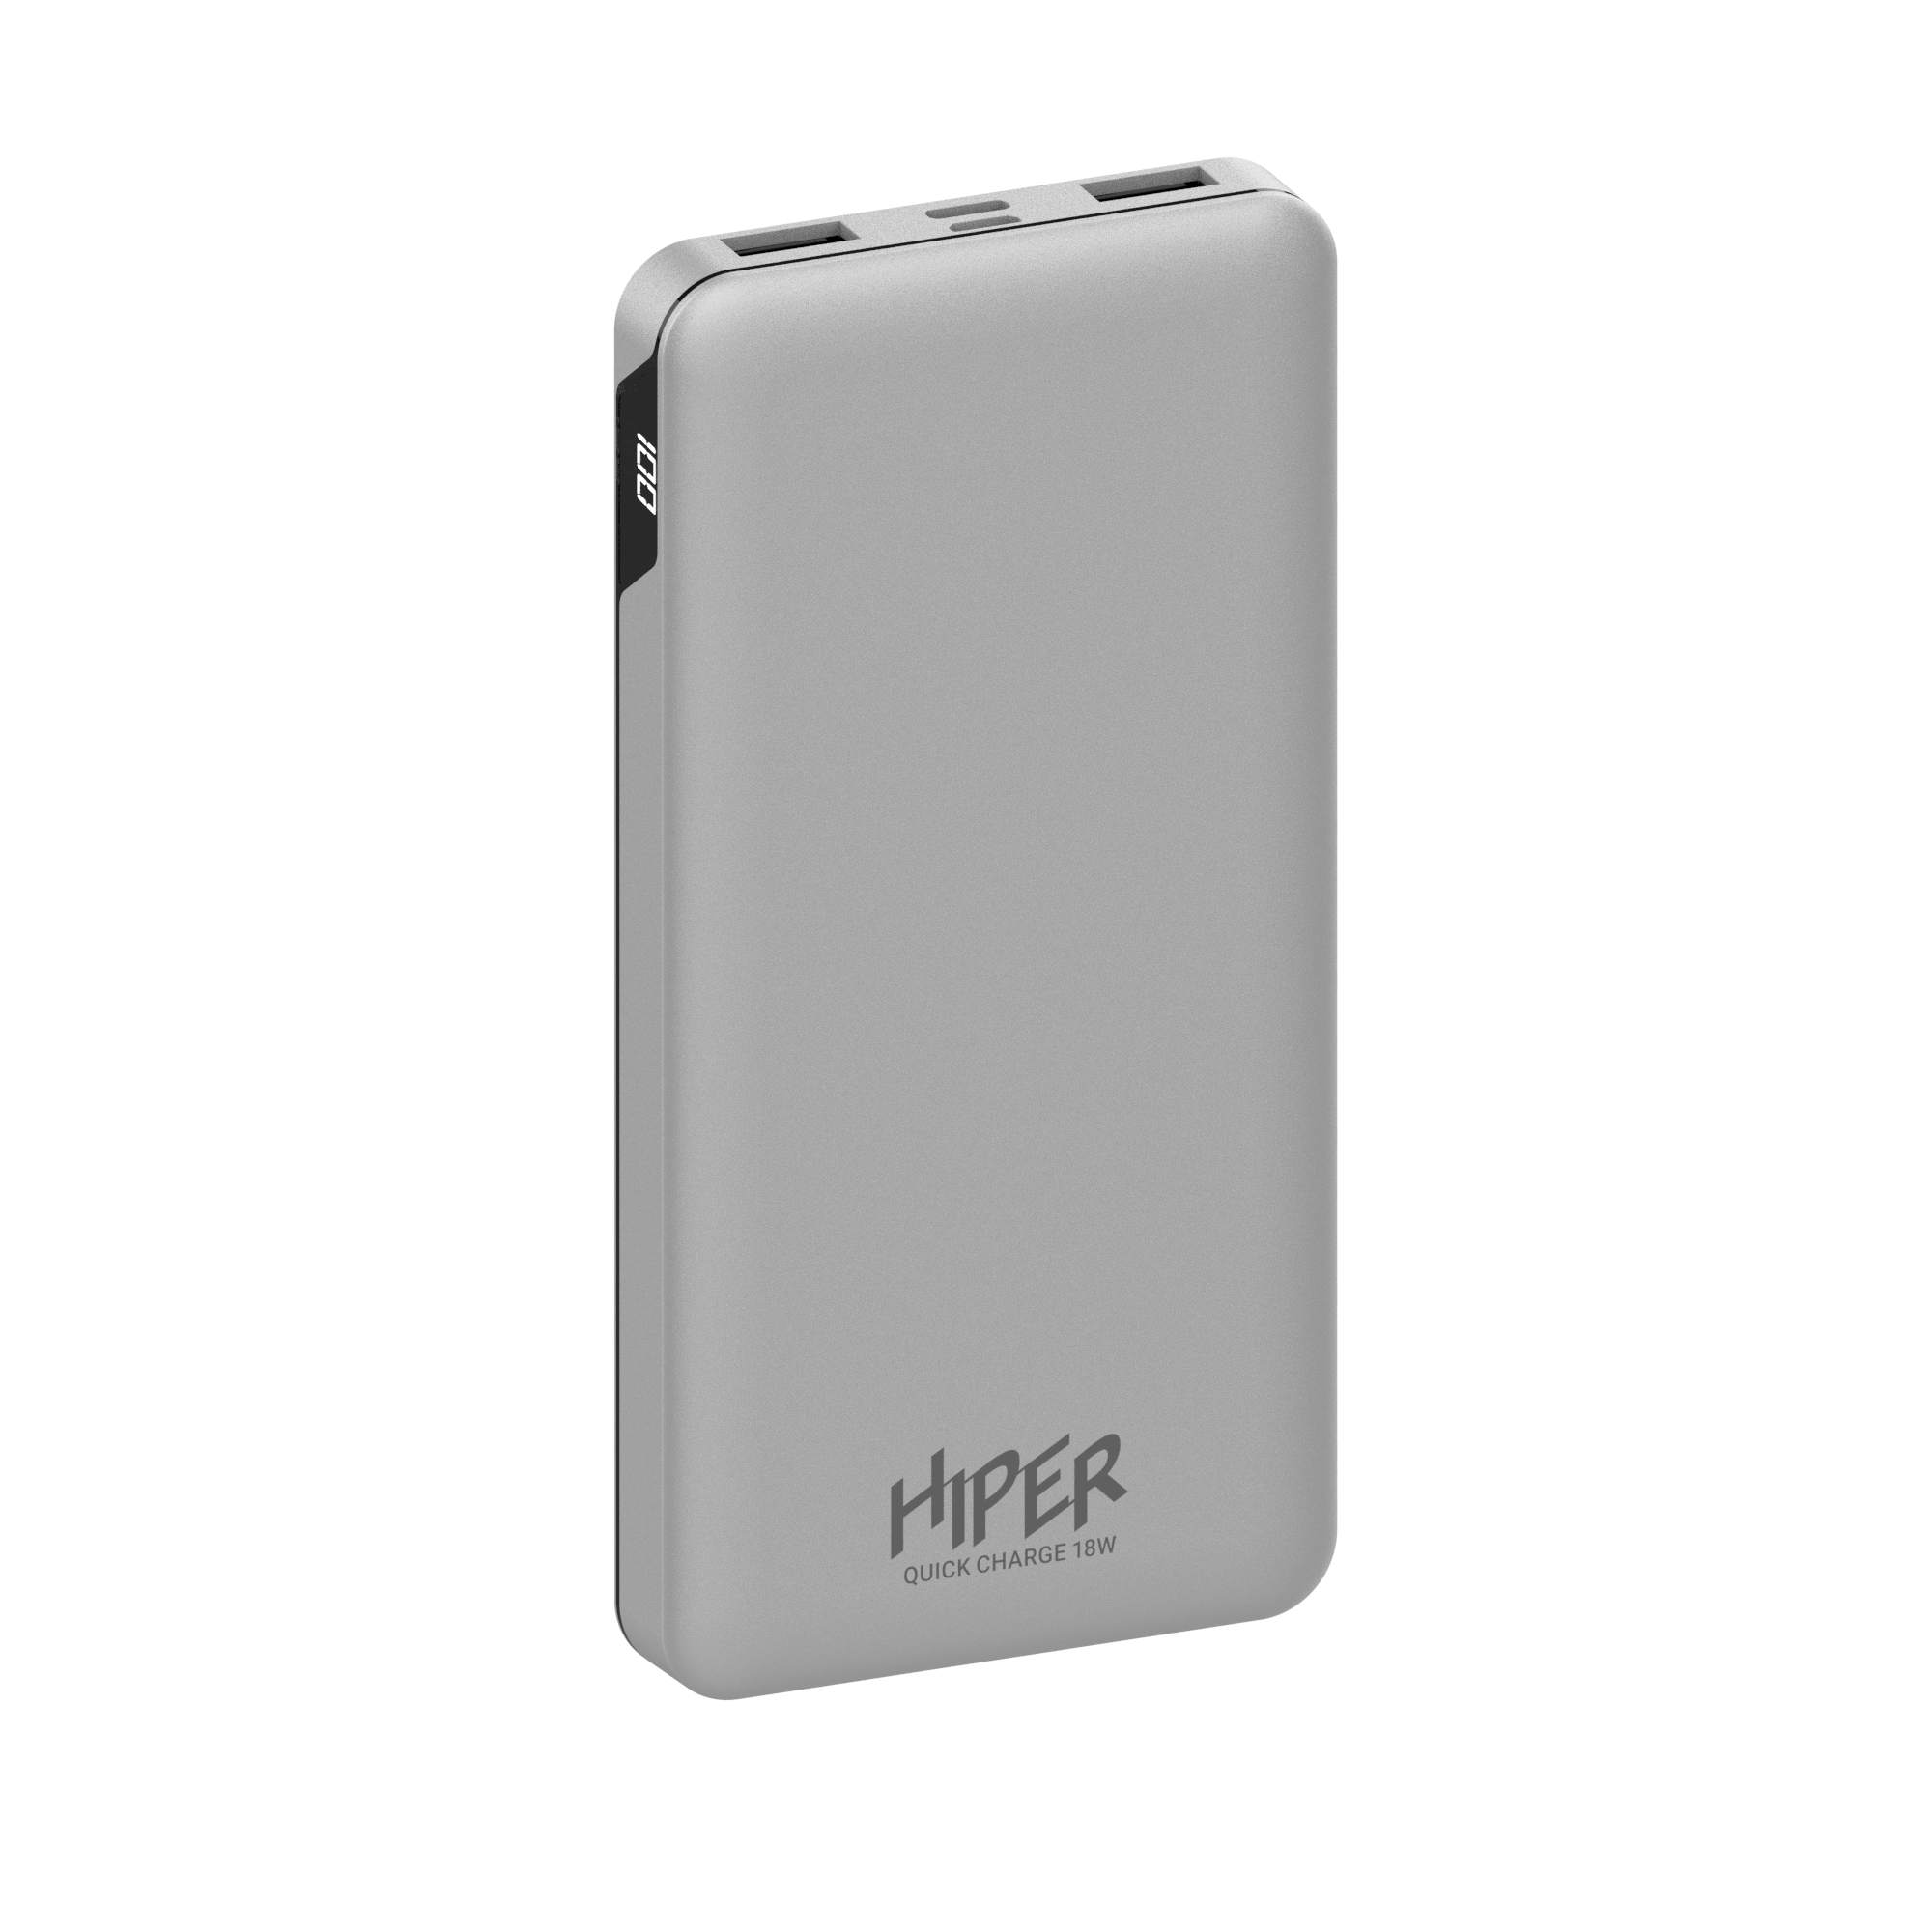 Мобильный аккумулятор Hiper MFX 10000 10000mAh 3A QC PD 2xUSB серебристый (MFX 10000 SILVER)